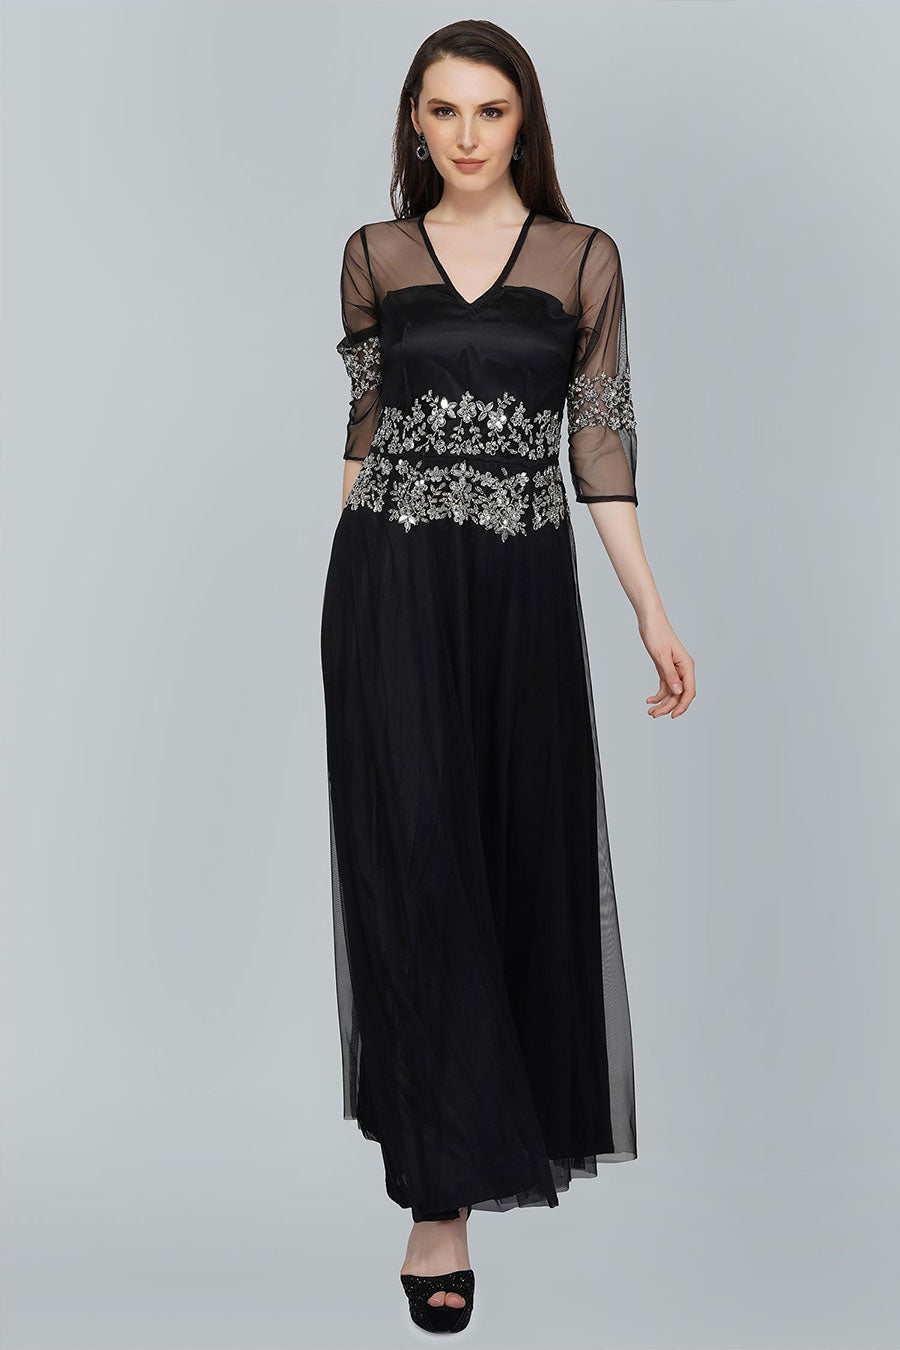 Embellished Black Gown Dress